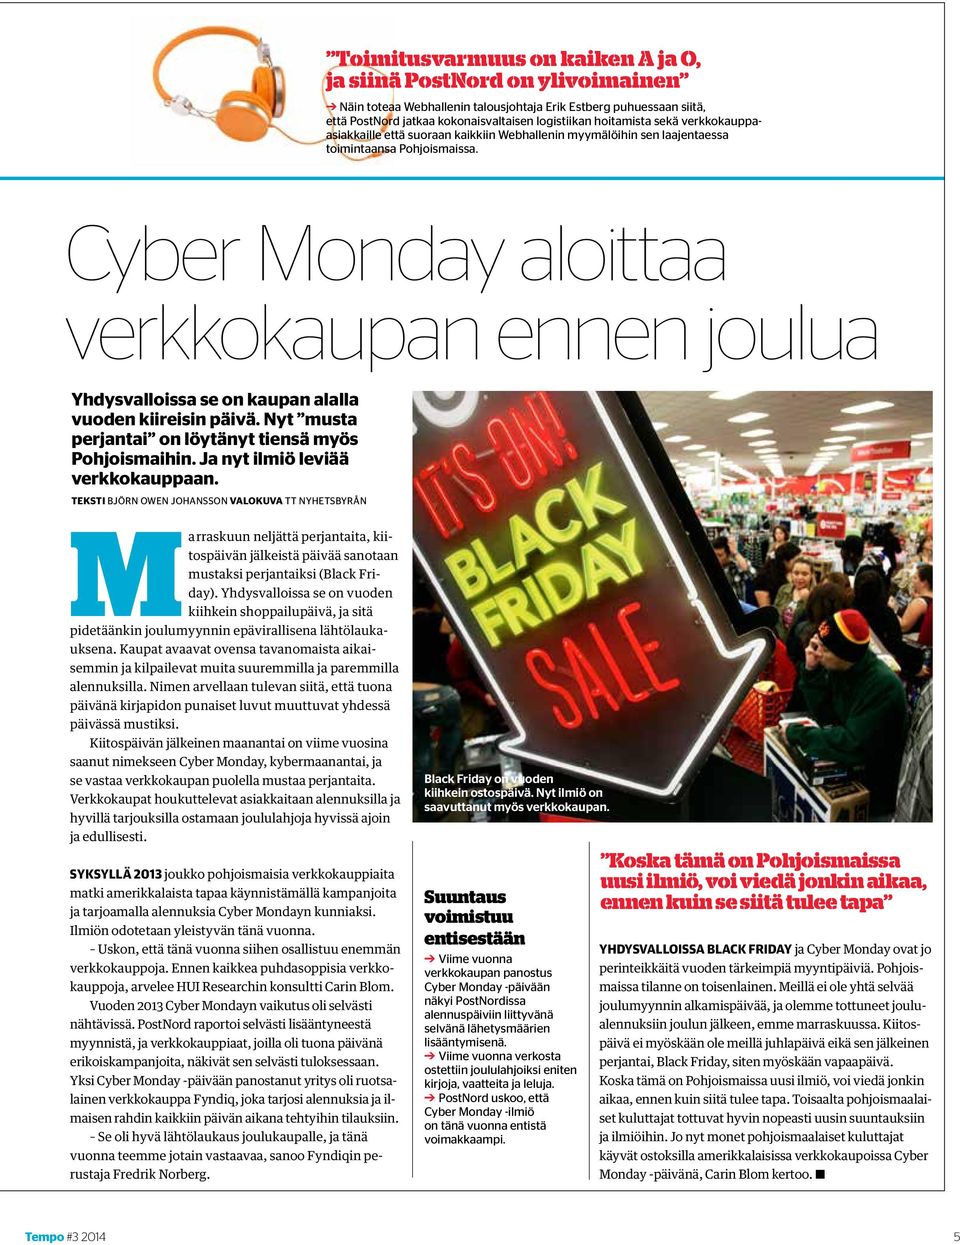 Cyber Monday aloittaa verkkokaupan ennen joulua Yhdysvalloissa se on kaupan alalla vuoden kiireisin päivä. Nyt musta perjantai on löytänyt tiensä myös Pohjoismaihin.